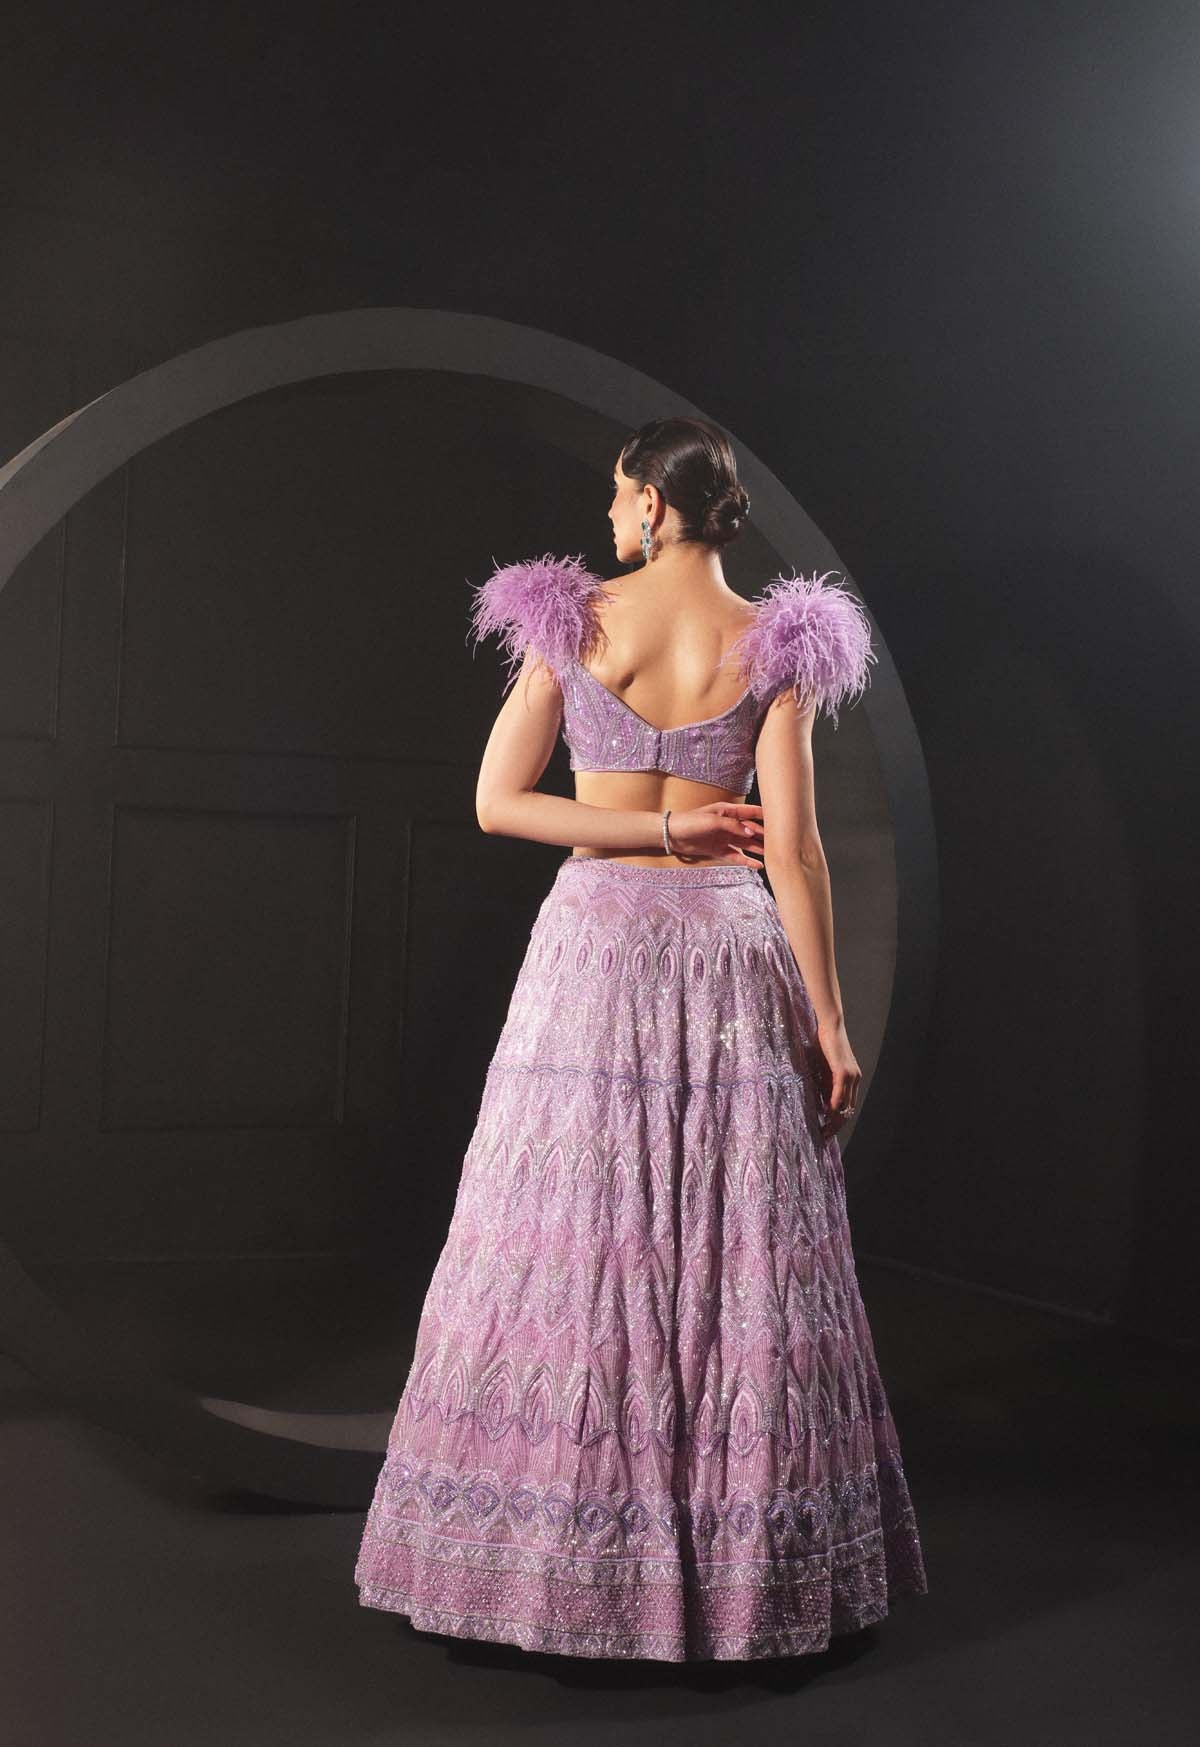 Luxurious Lilac Lehenga Set with Feather Embellishments